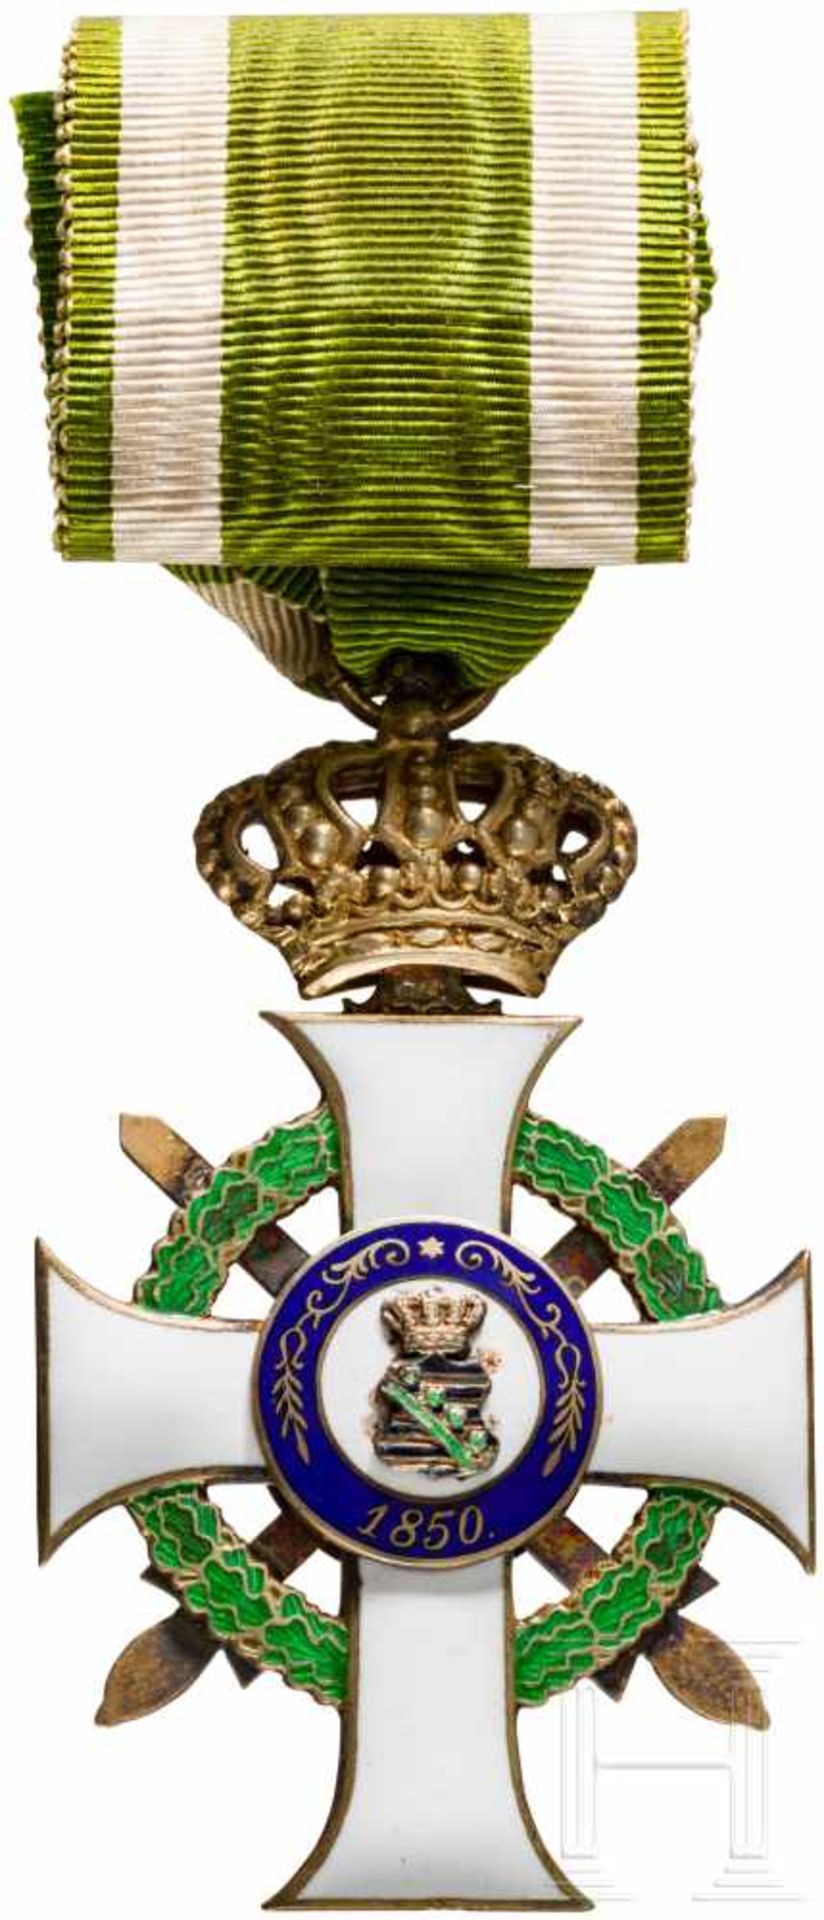 Albrechtsorden - Ritterkreuz 1. Klasse mit Krone und SchwerternSilber, emailliert, einseitig - Bild 2 aus 2